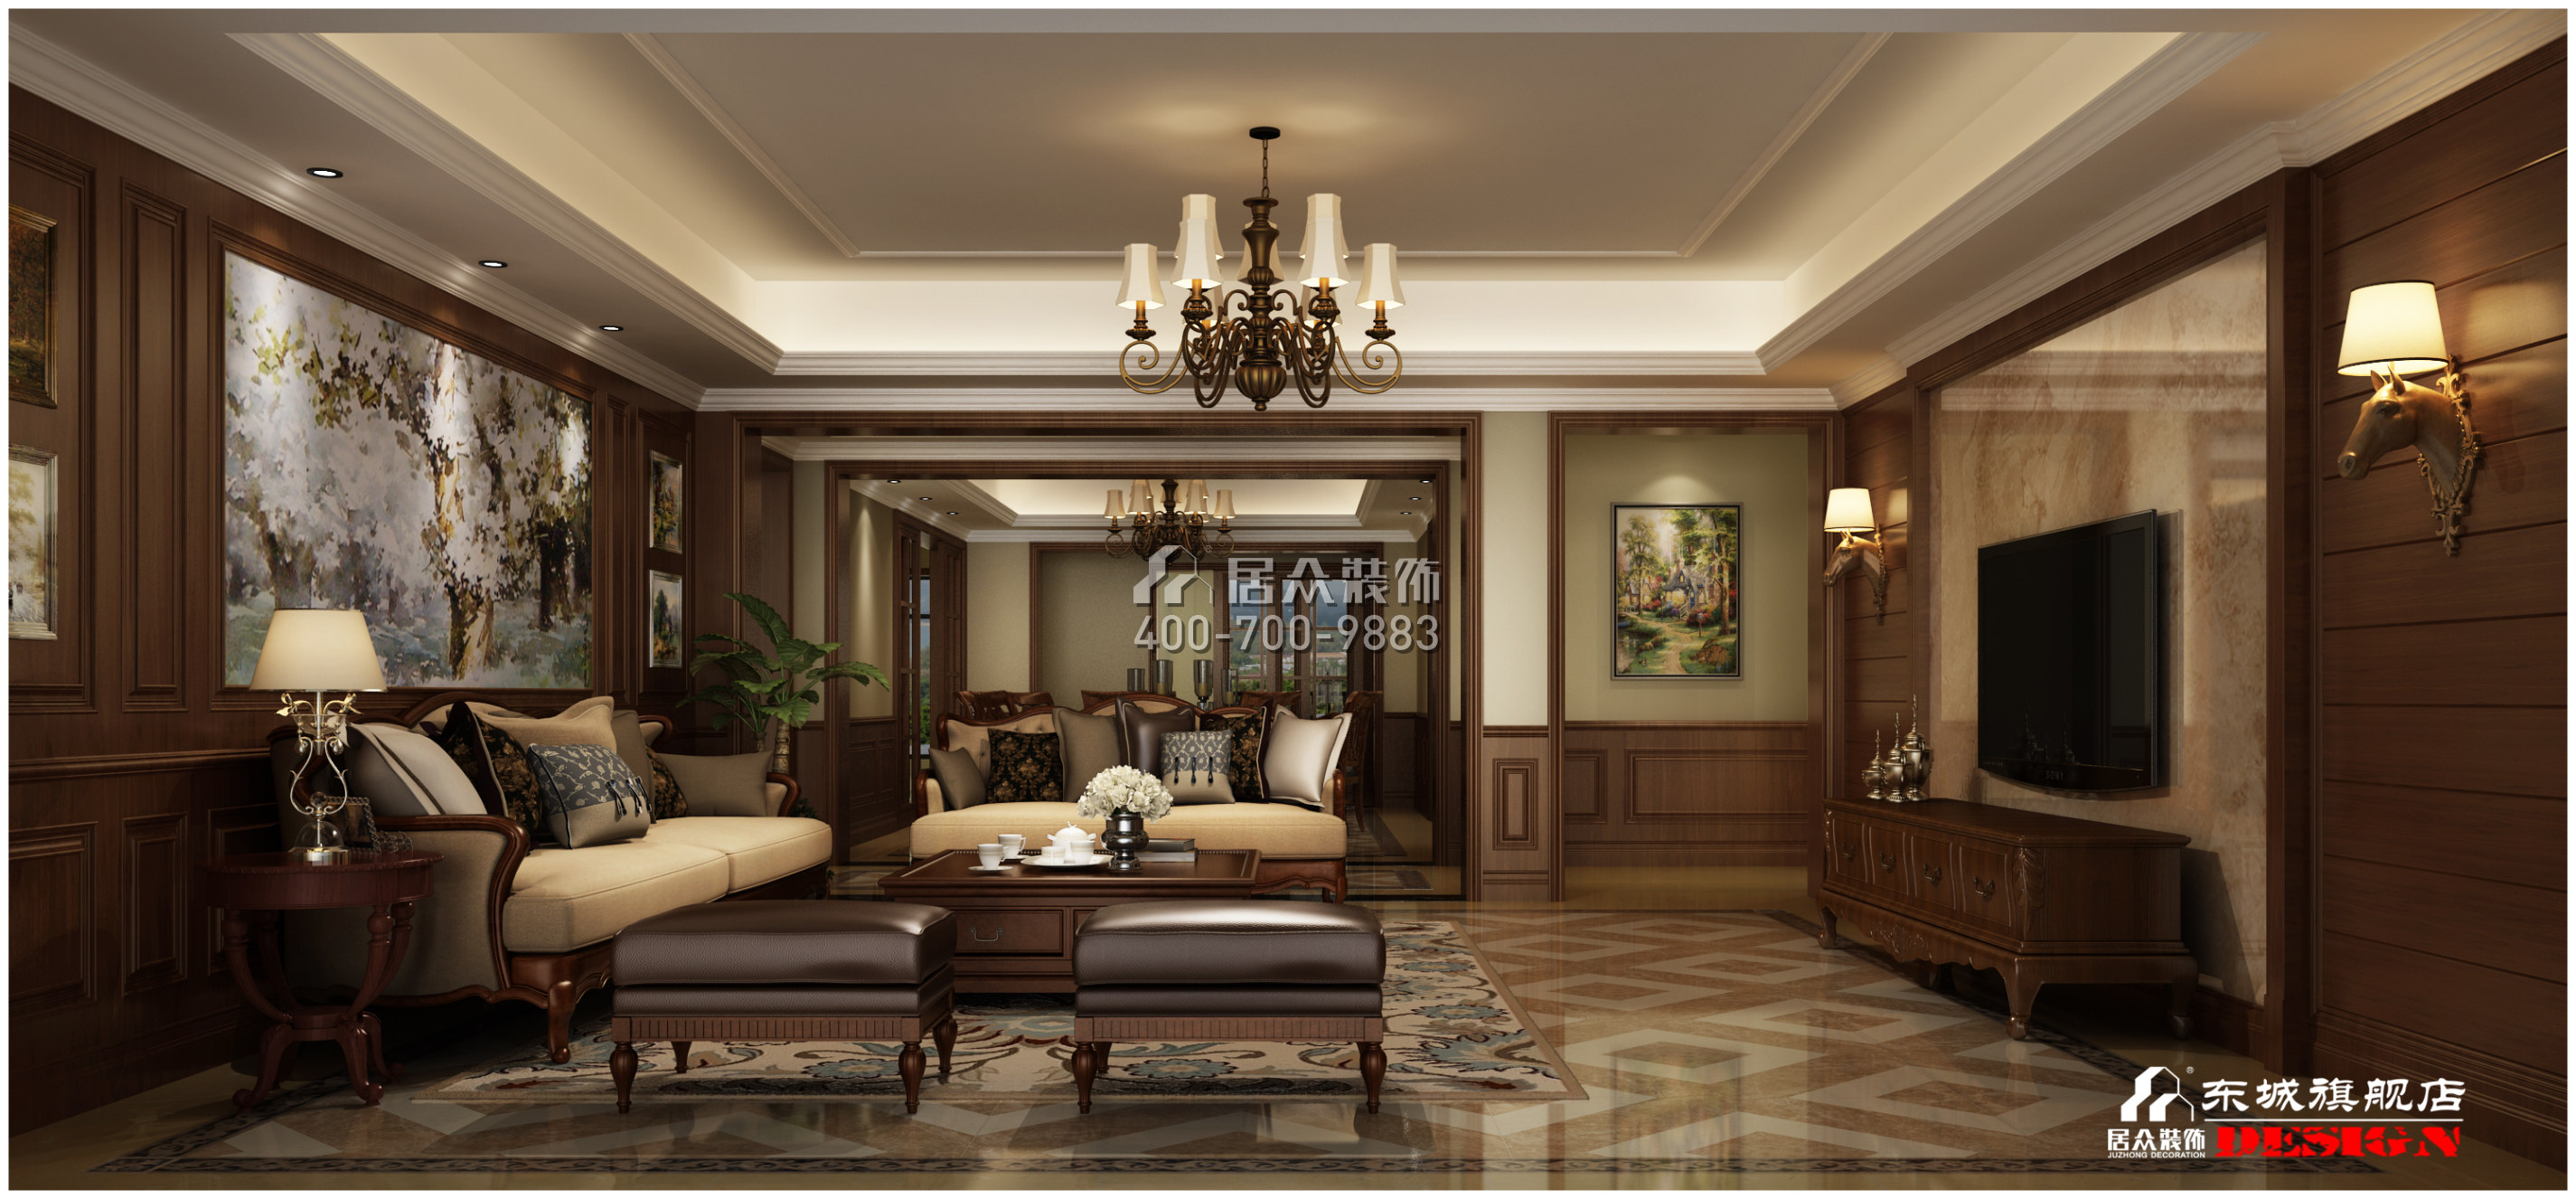 碧桂园天玺湾400平方米美式风格平层户型客厅装修效果图